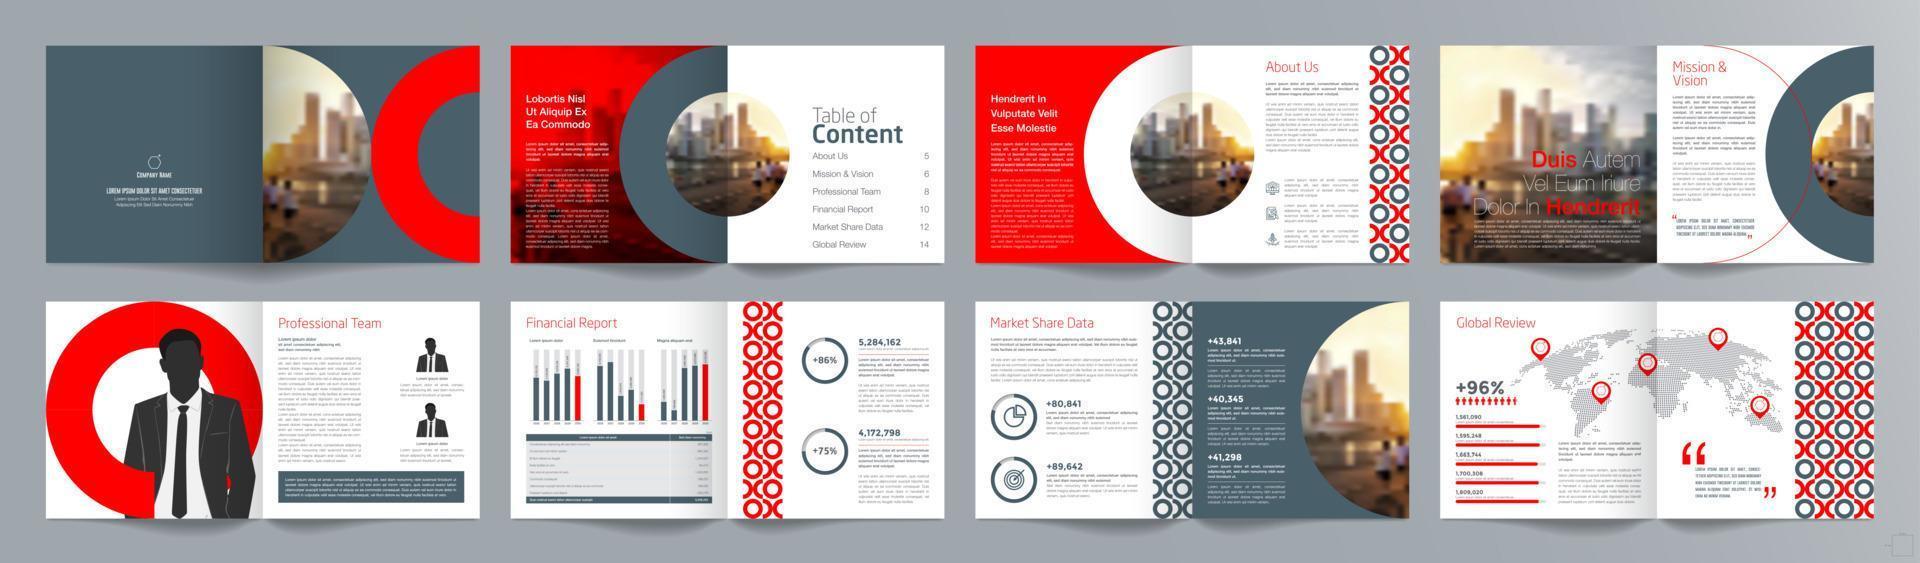 företagspresentation guide broschyr mall, årsredovisning, 16 sidor minimalistisk platt geometrisk affärsbroschyr designmall, kvadratisk storlek. vektor